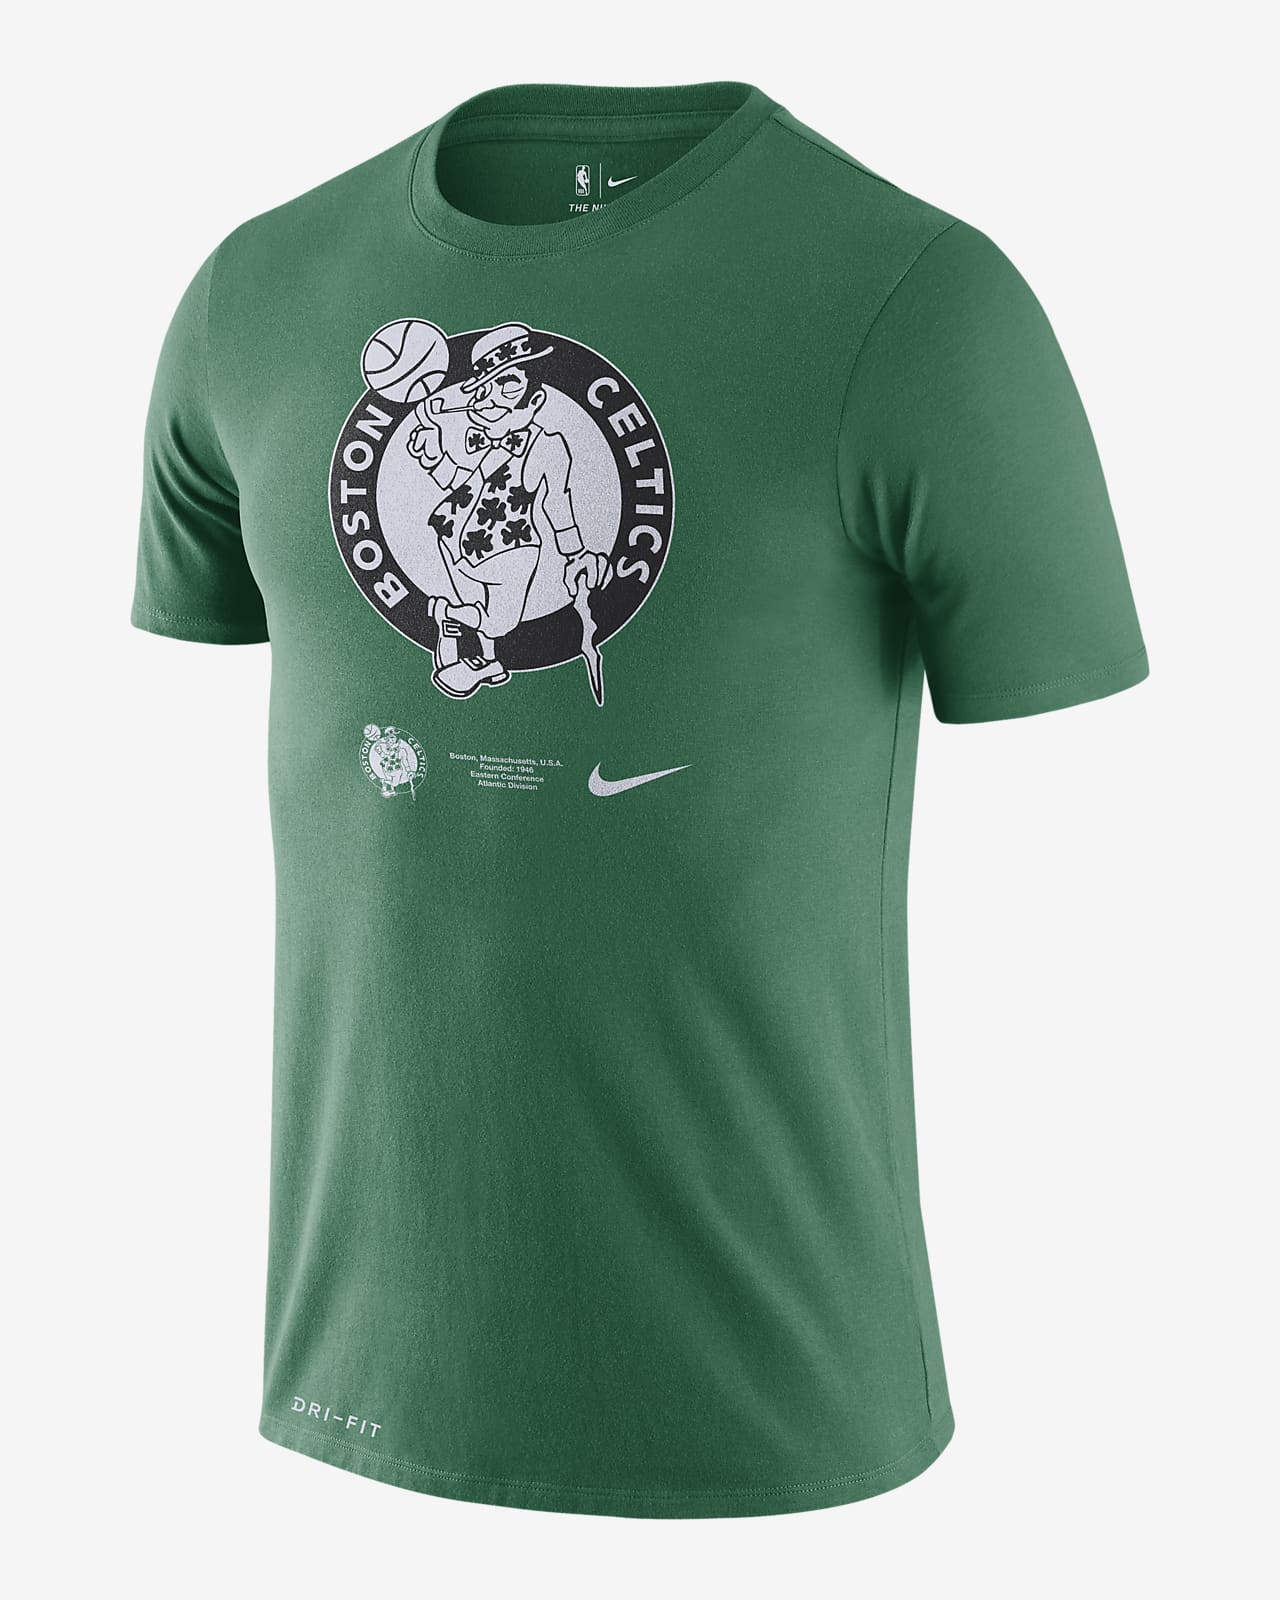 Download Celtics Logo Men's Nike Dri-FIT NBA T-Shirt. Nike.com